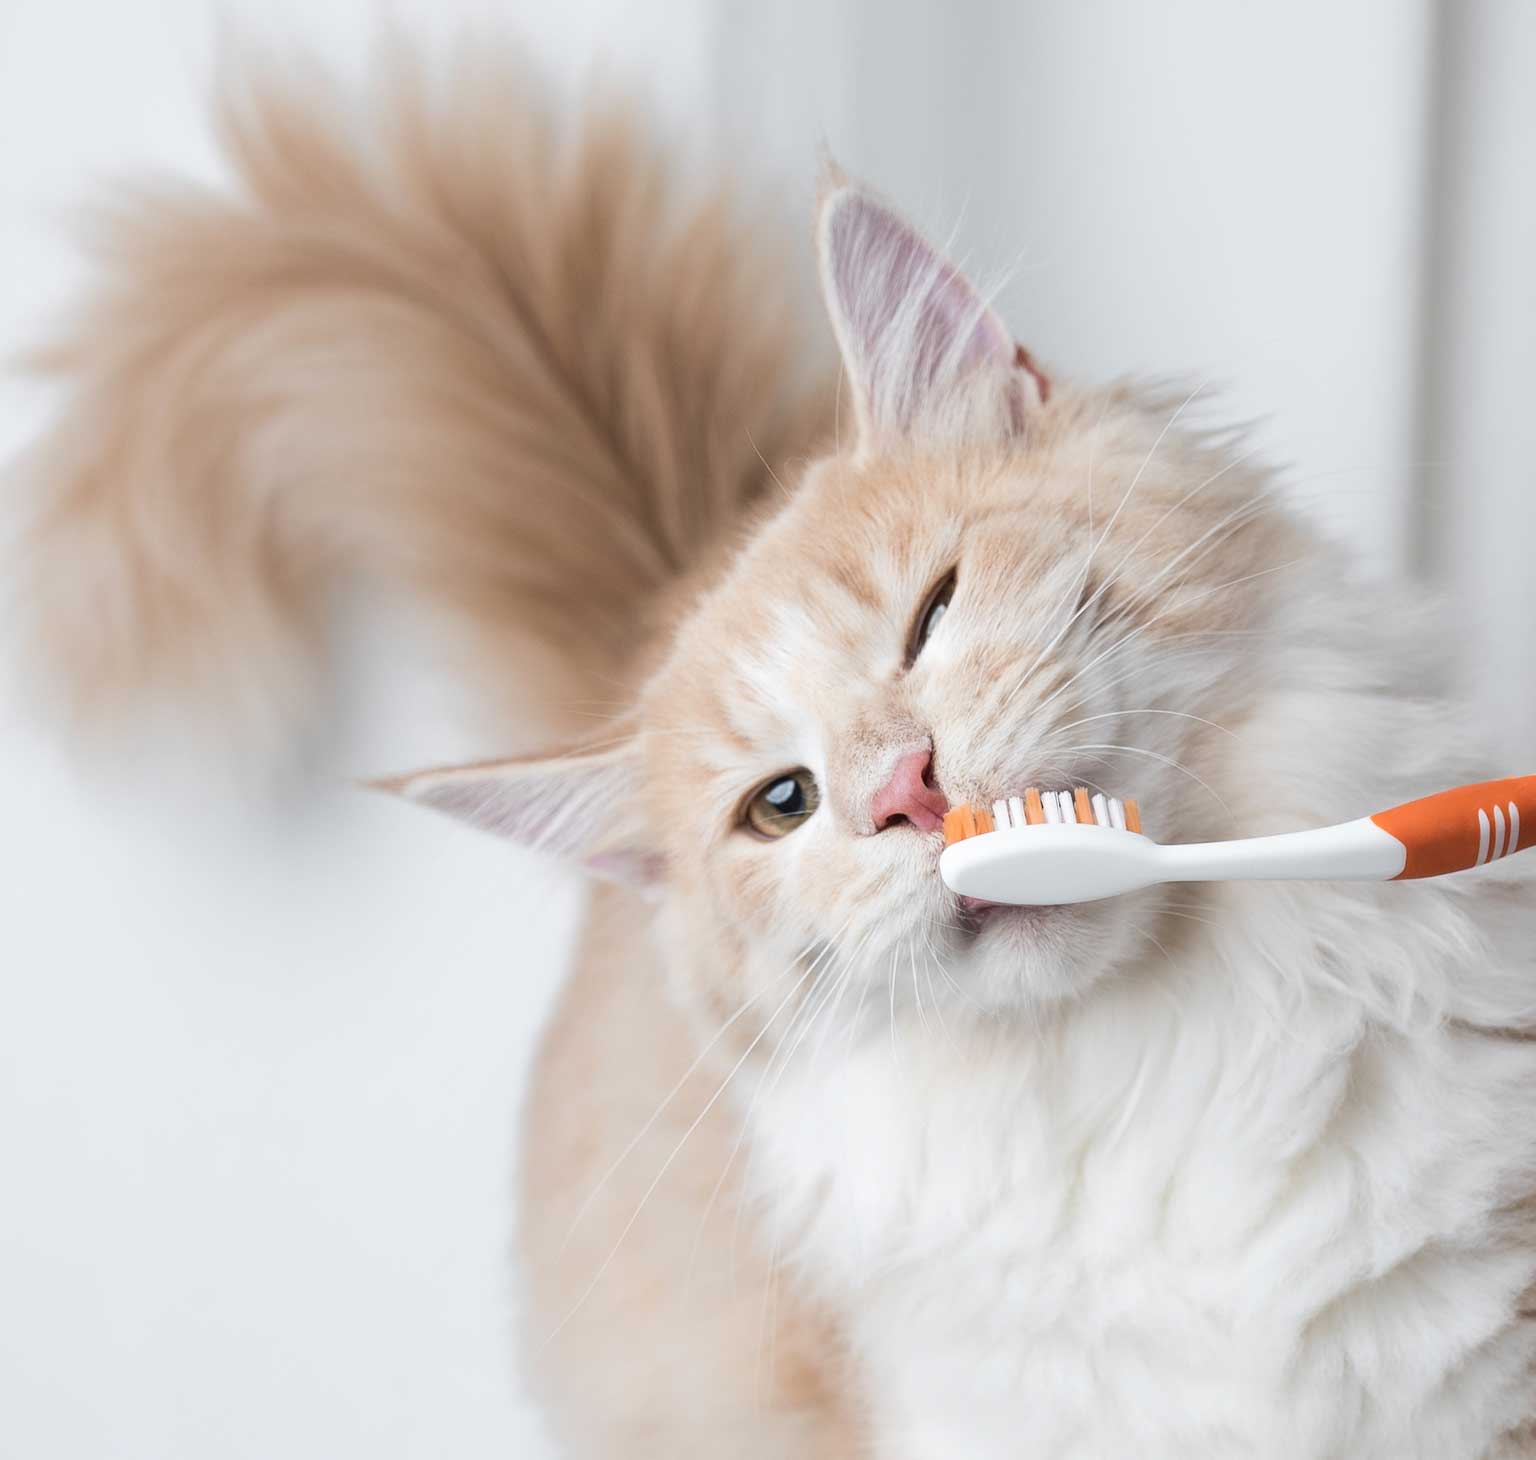 I nostri suggerimenti su come prendersi cura dei denti del proprio gatto